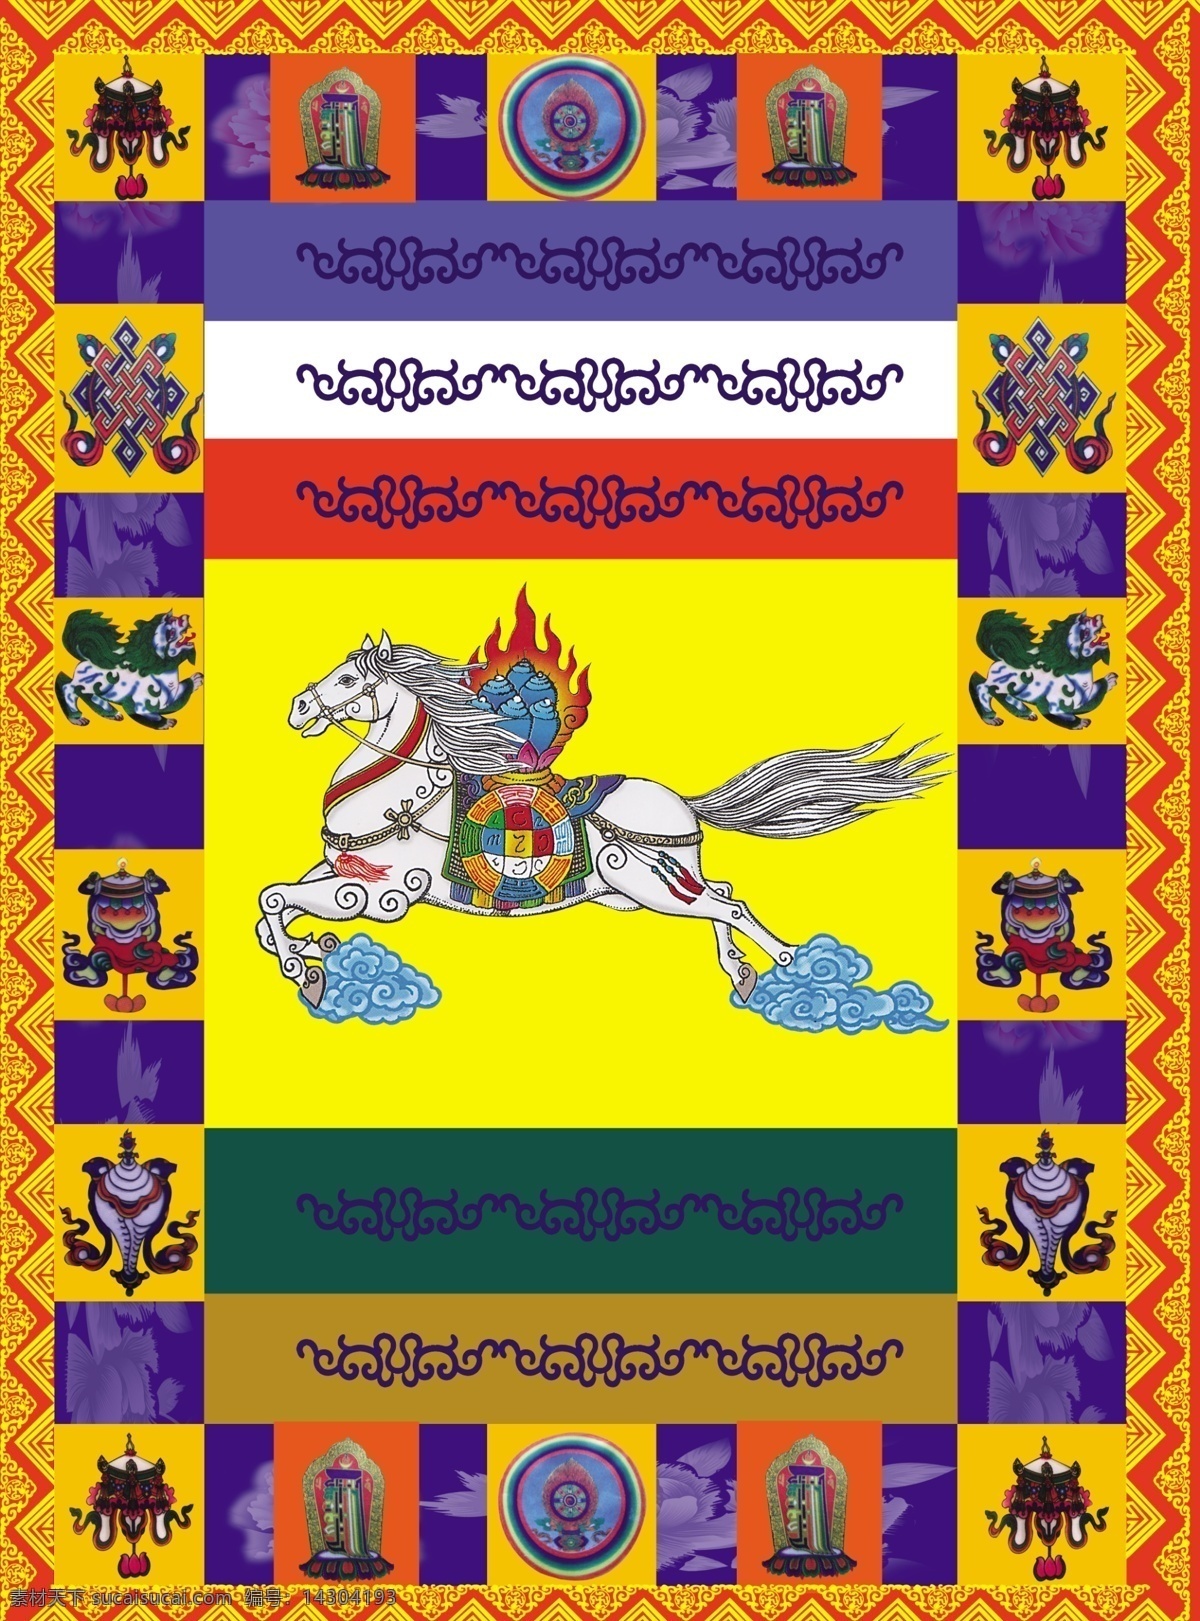 蒙古旗子 蒙古族 节日 用旗子 那达慕 蒙古传统 文化艺术 传统文化